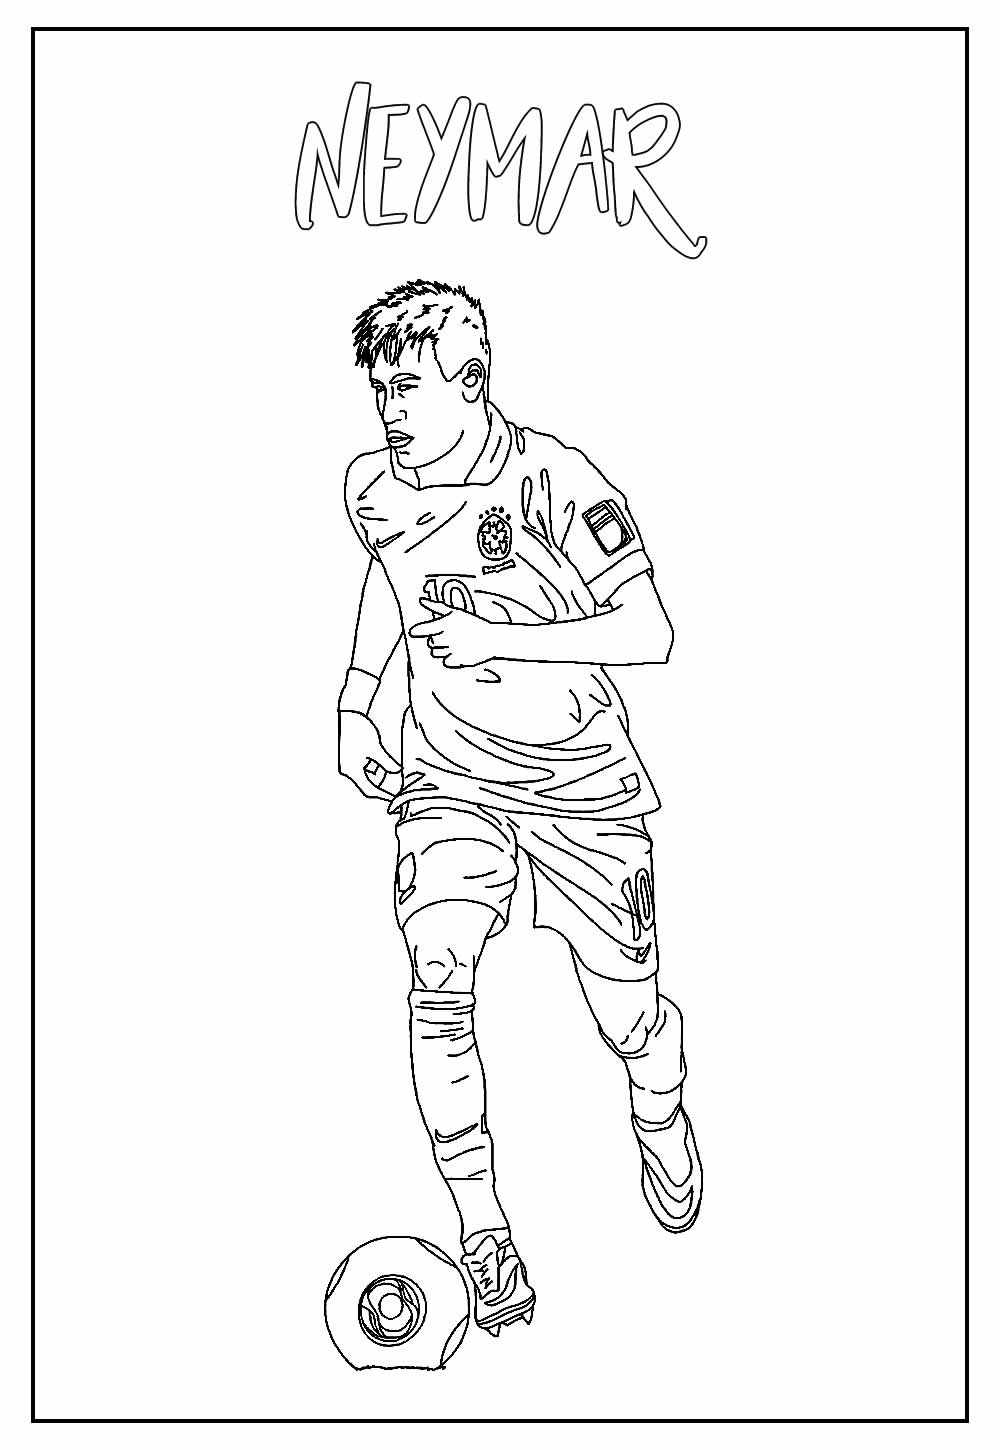 Desenho de Neymar para imprimir e colorir